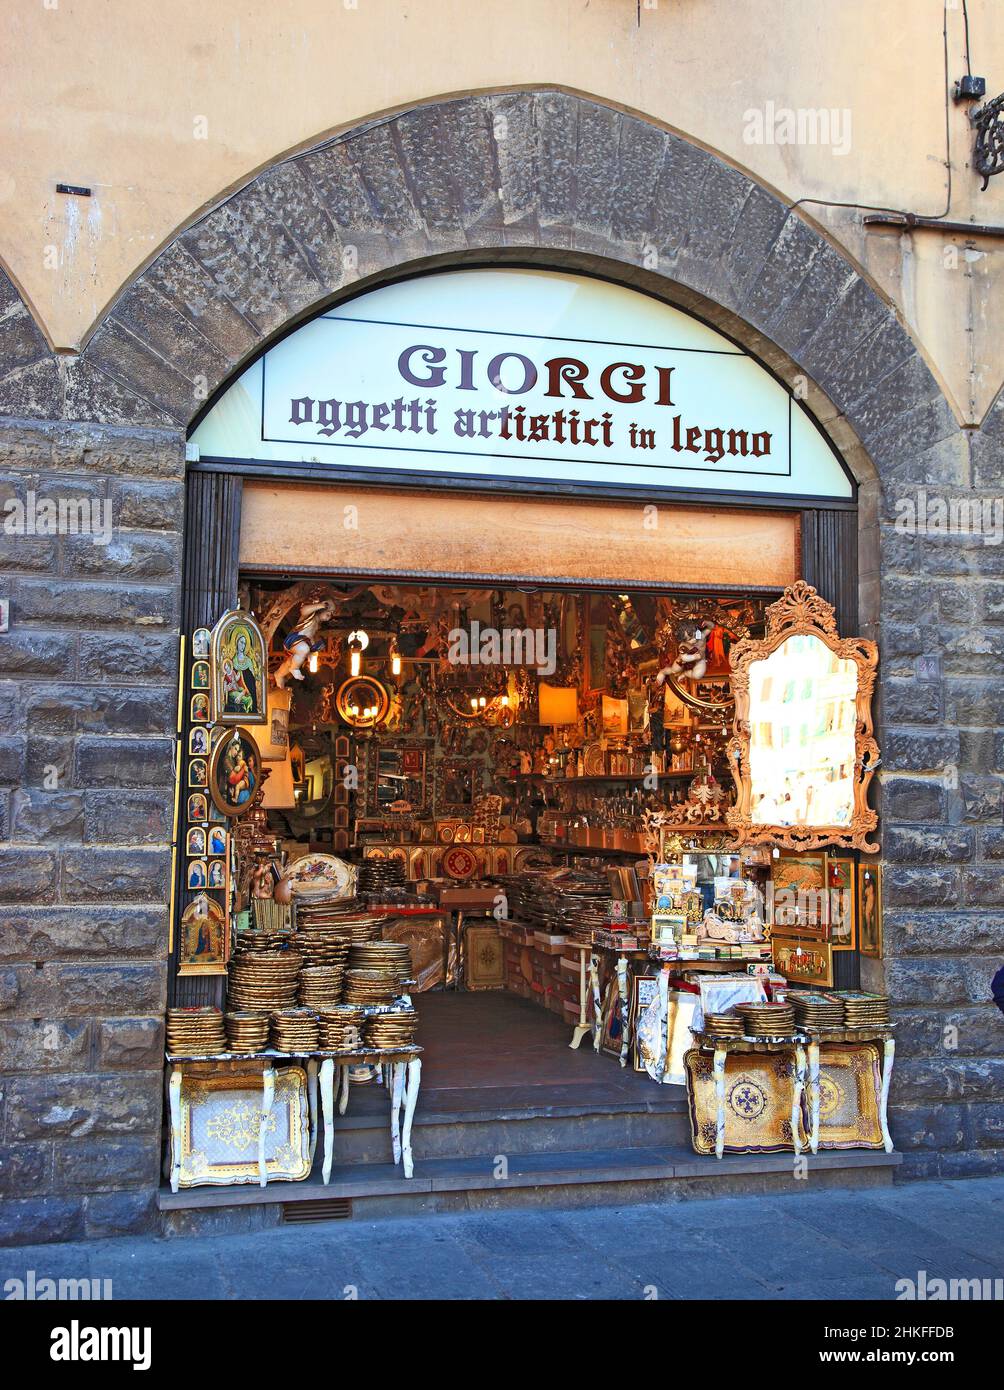 Negozio di articoli d'arte in legno a Firenze, Firenze, Toscana, Italia Foto Stock